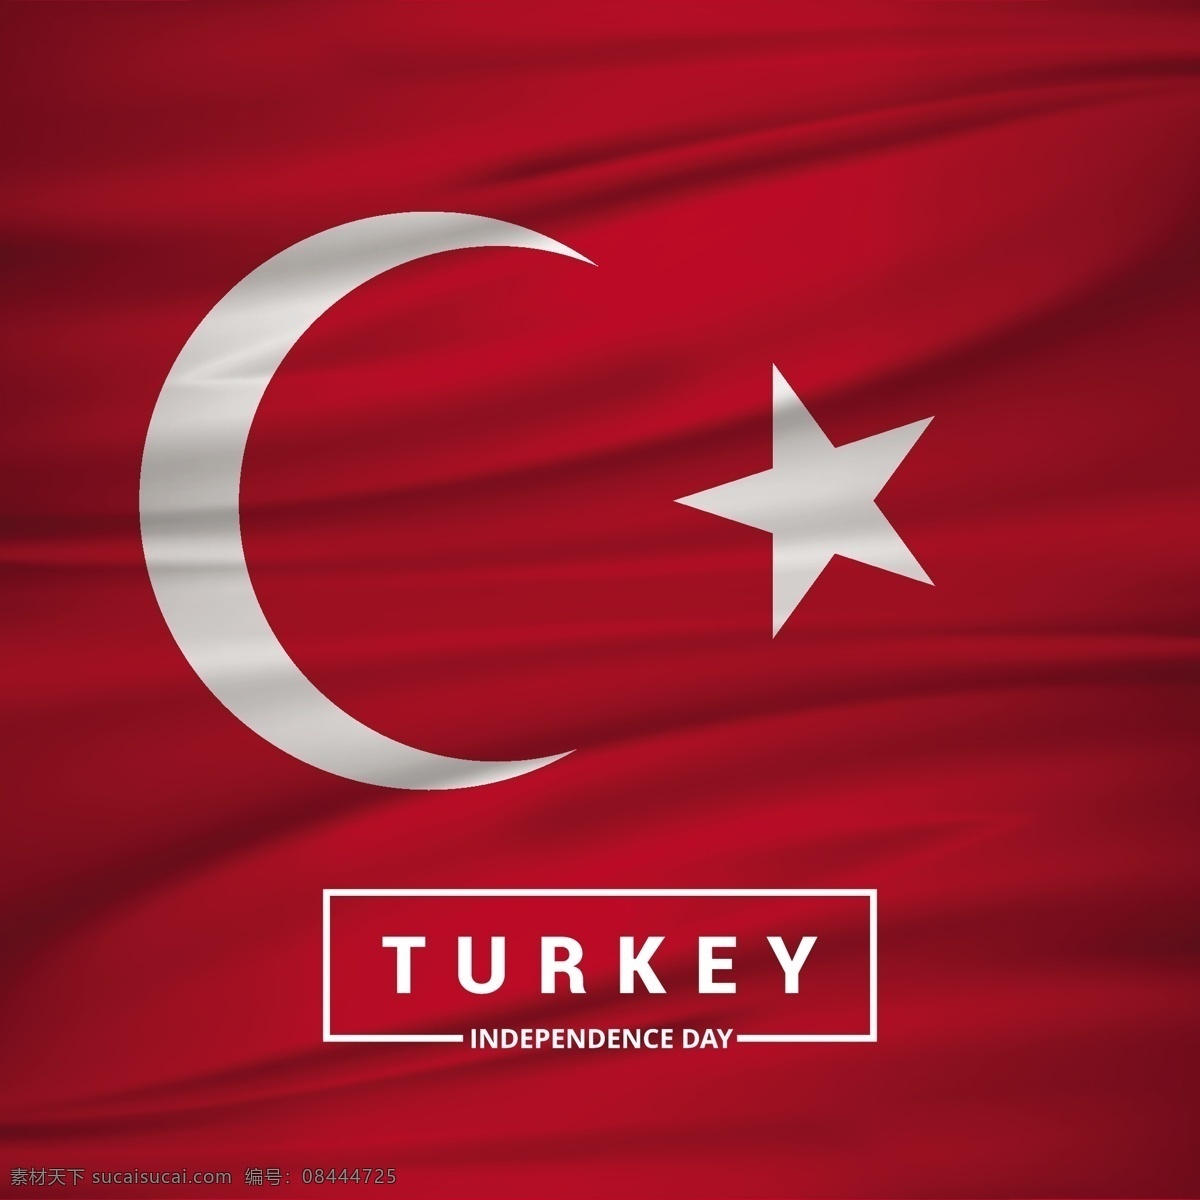 背景 土耳其 国旗 明星 世界 红色 月亮 红色背景 宗教 欧洲 独立日 国家 日期 亚洲 穆斯林 伊斯坦布尔 明星背景 国际 日